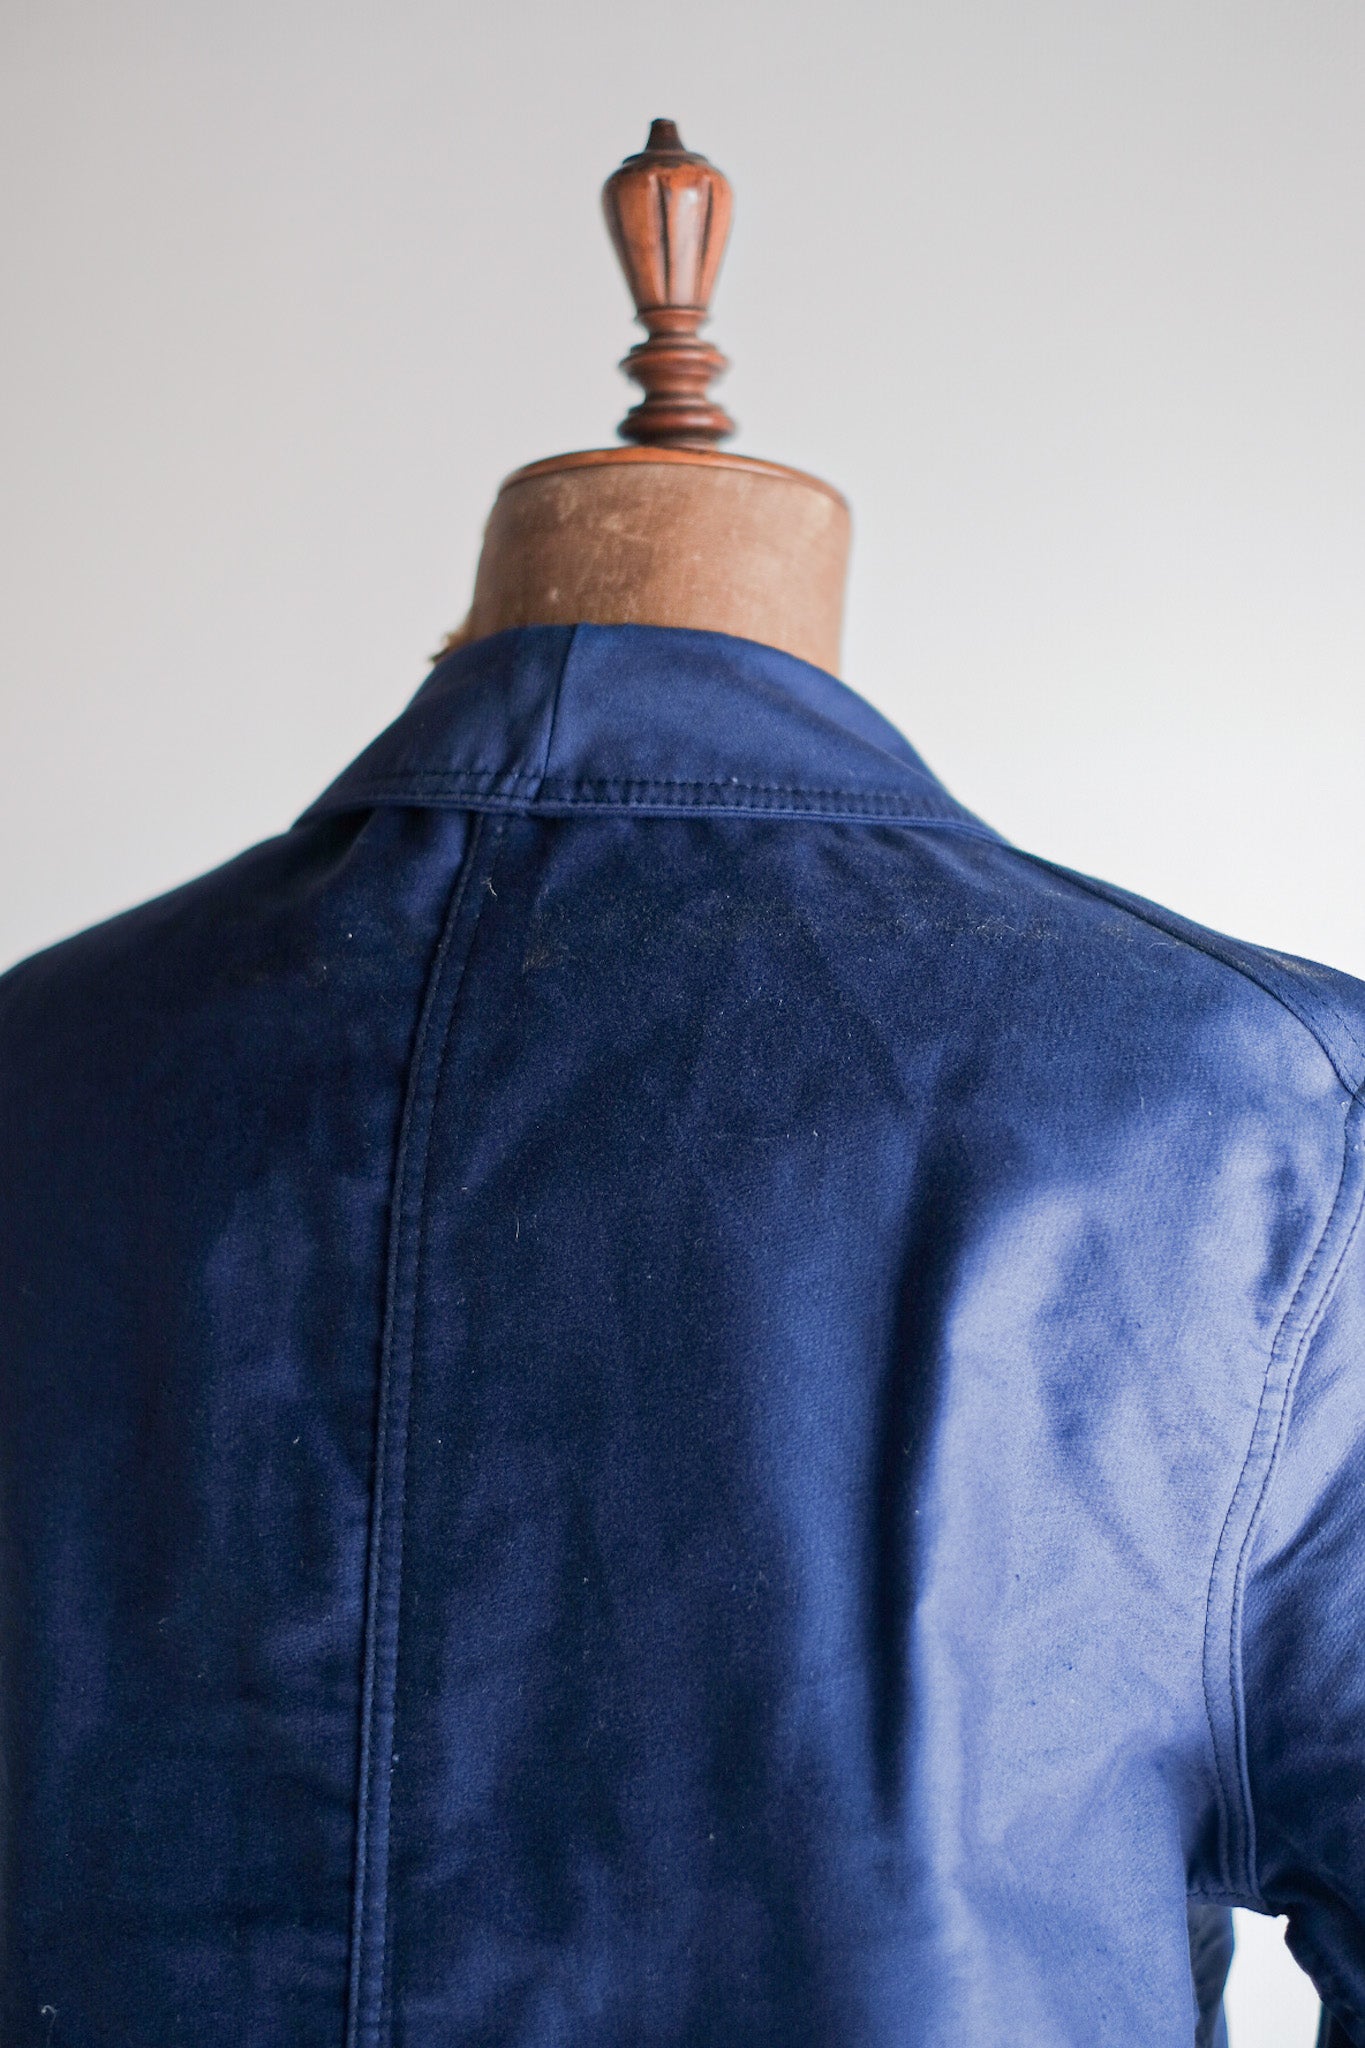 [~ 50's] French Vintage Blue Moleskin Work Jacket "Dead Stock"